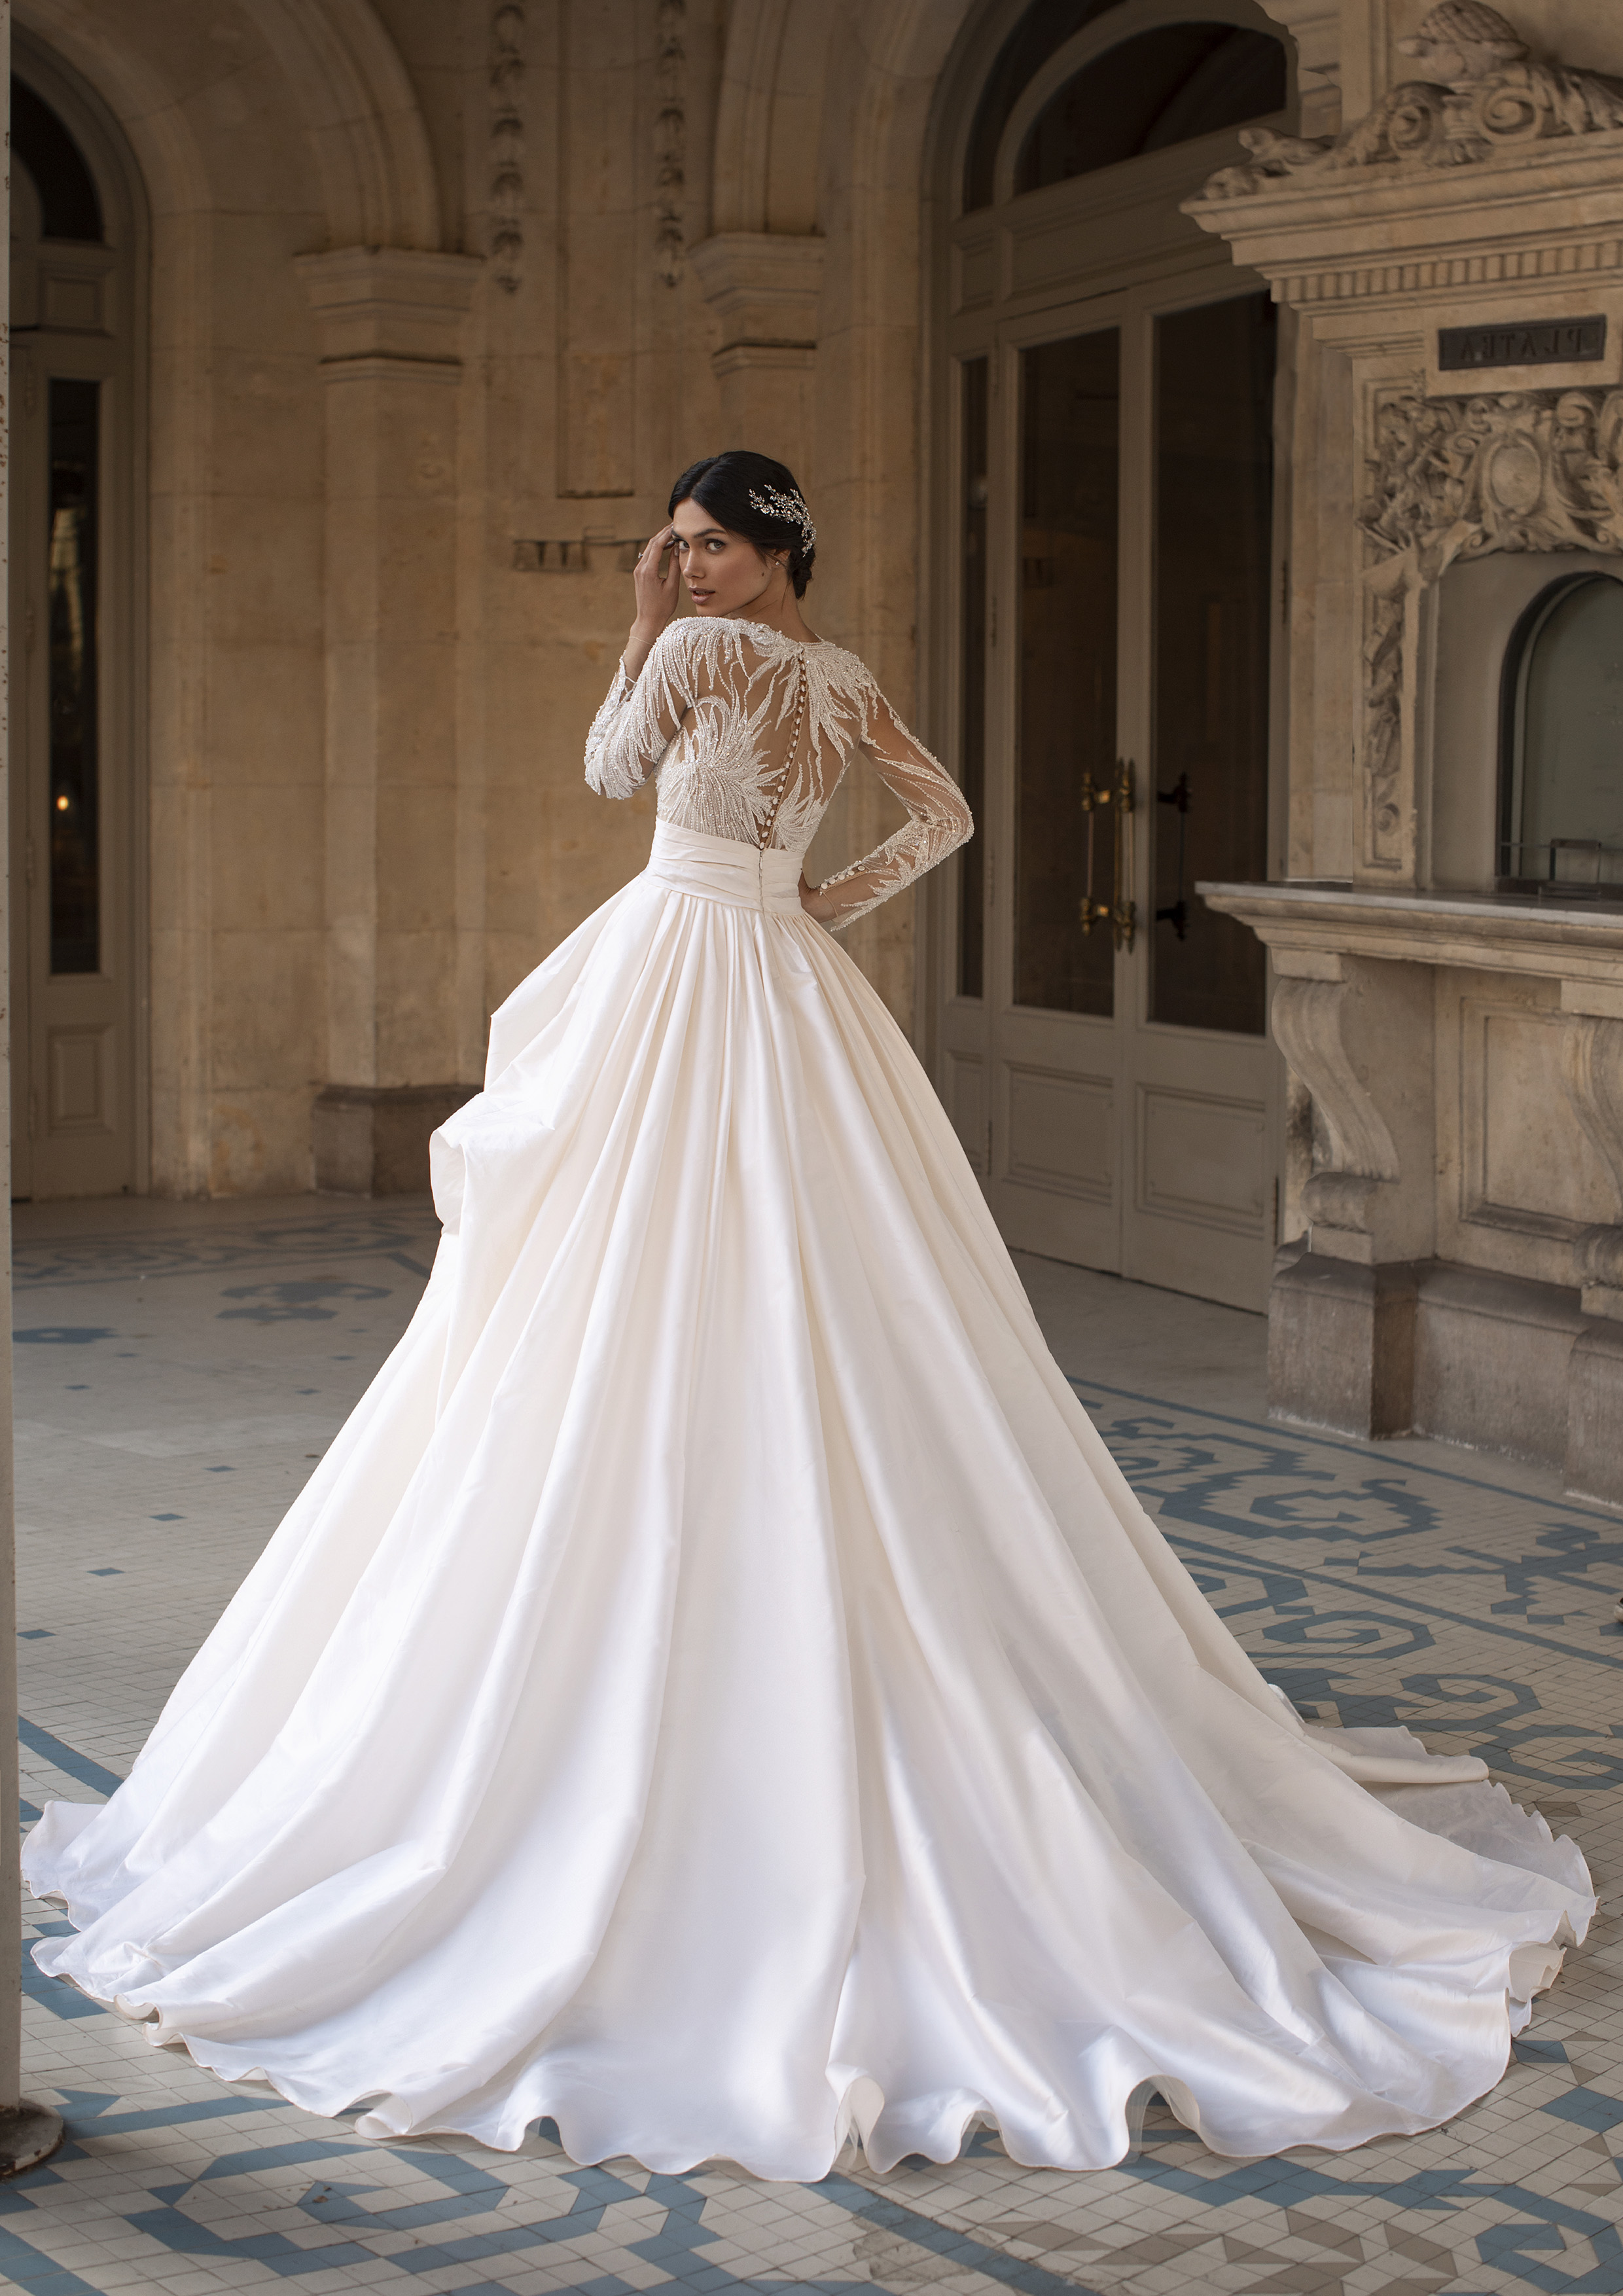 Maravilhoso vestido de noiva corte princesa com saia em micado e corpo com transparências e bordados, também nas mangas compridas | Modelo Blondell da coleção Pronovias Privée 2021